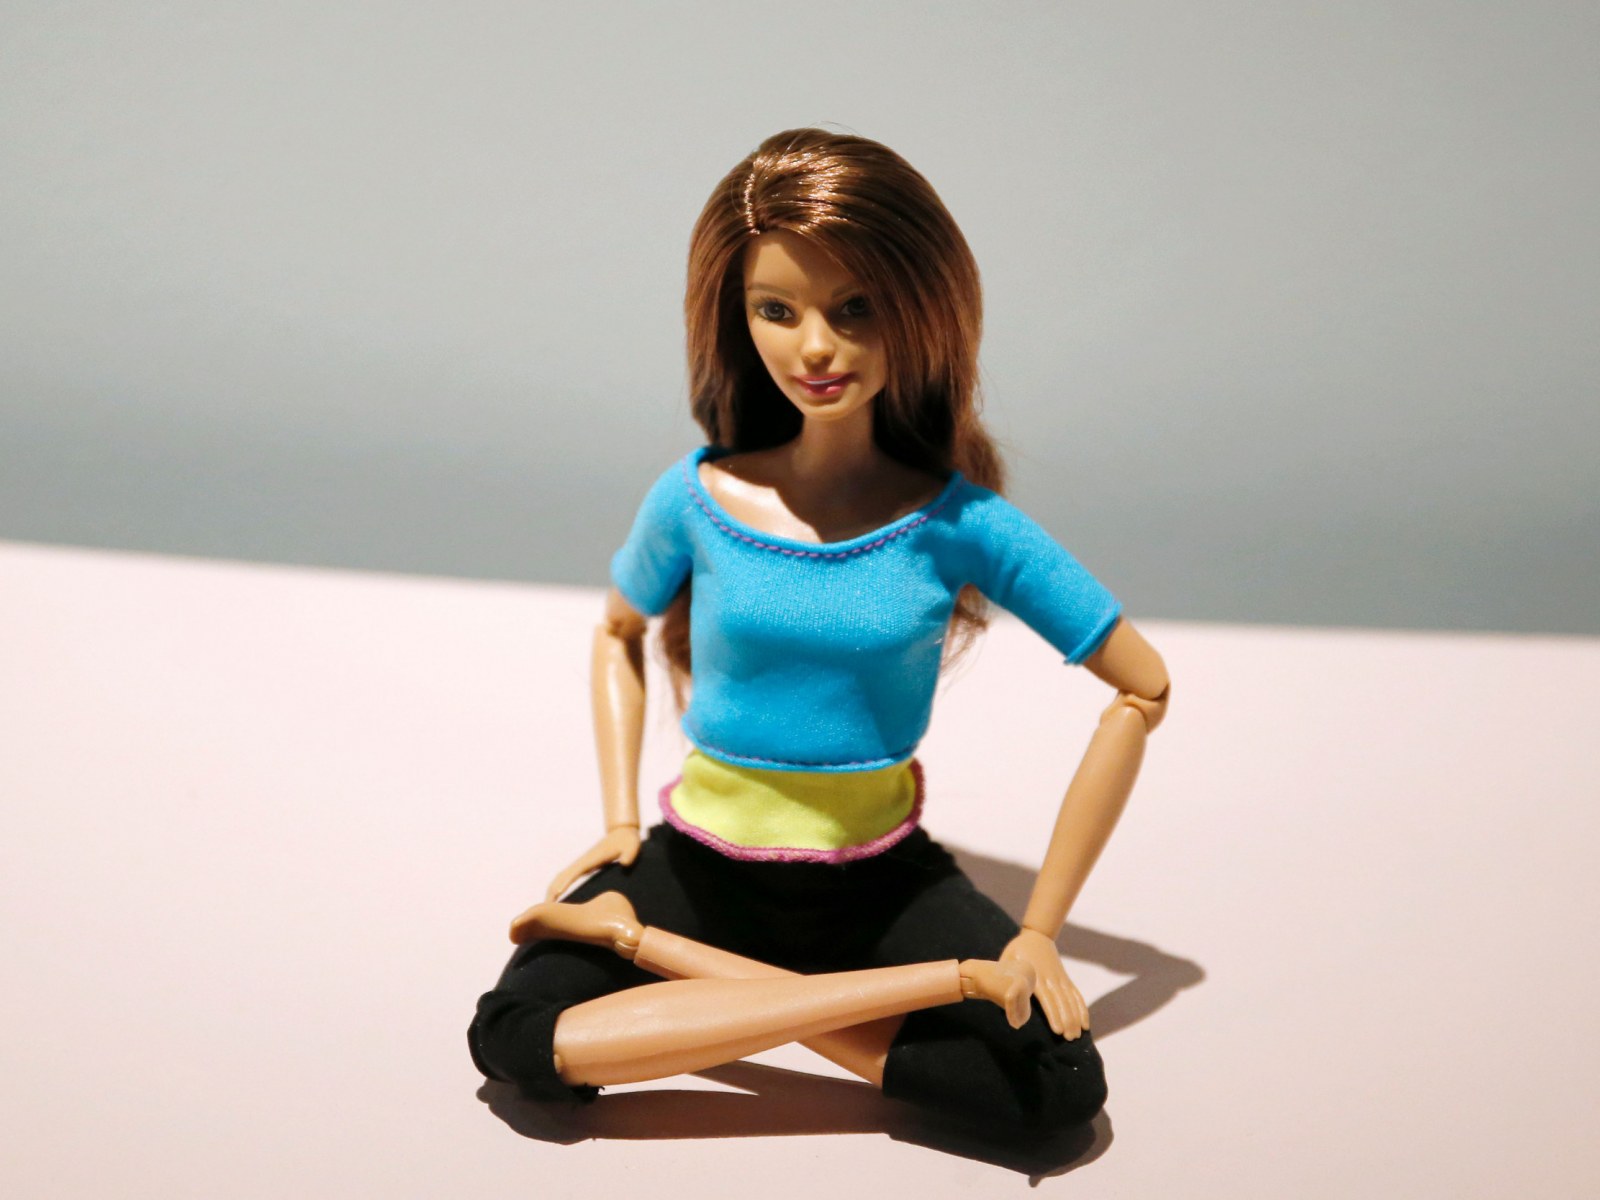 Christian Influencer Warning Yoga Barbie Will 'Possess' Kids